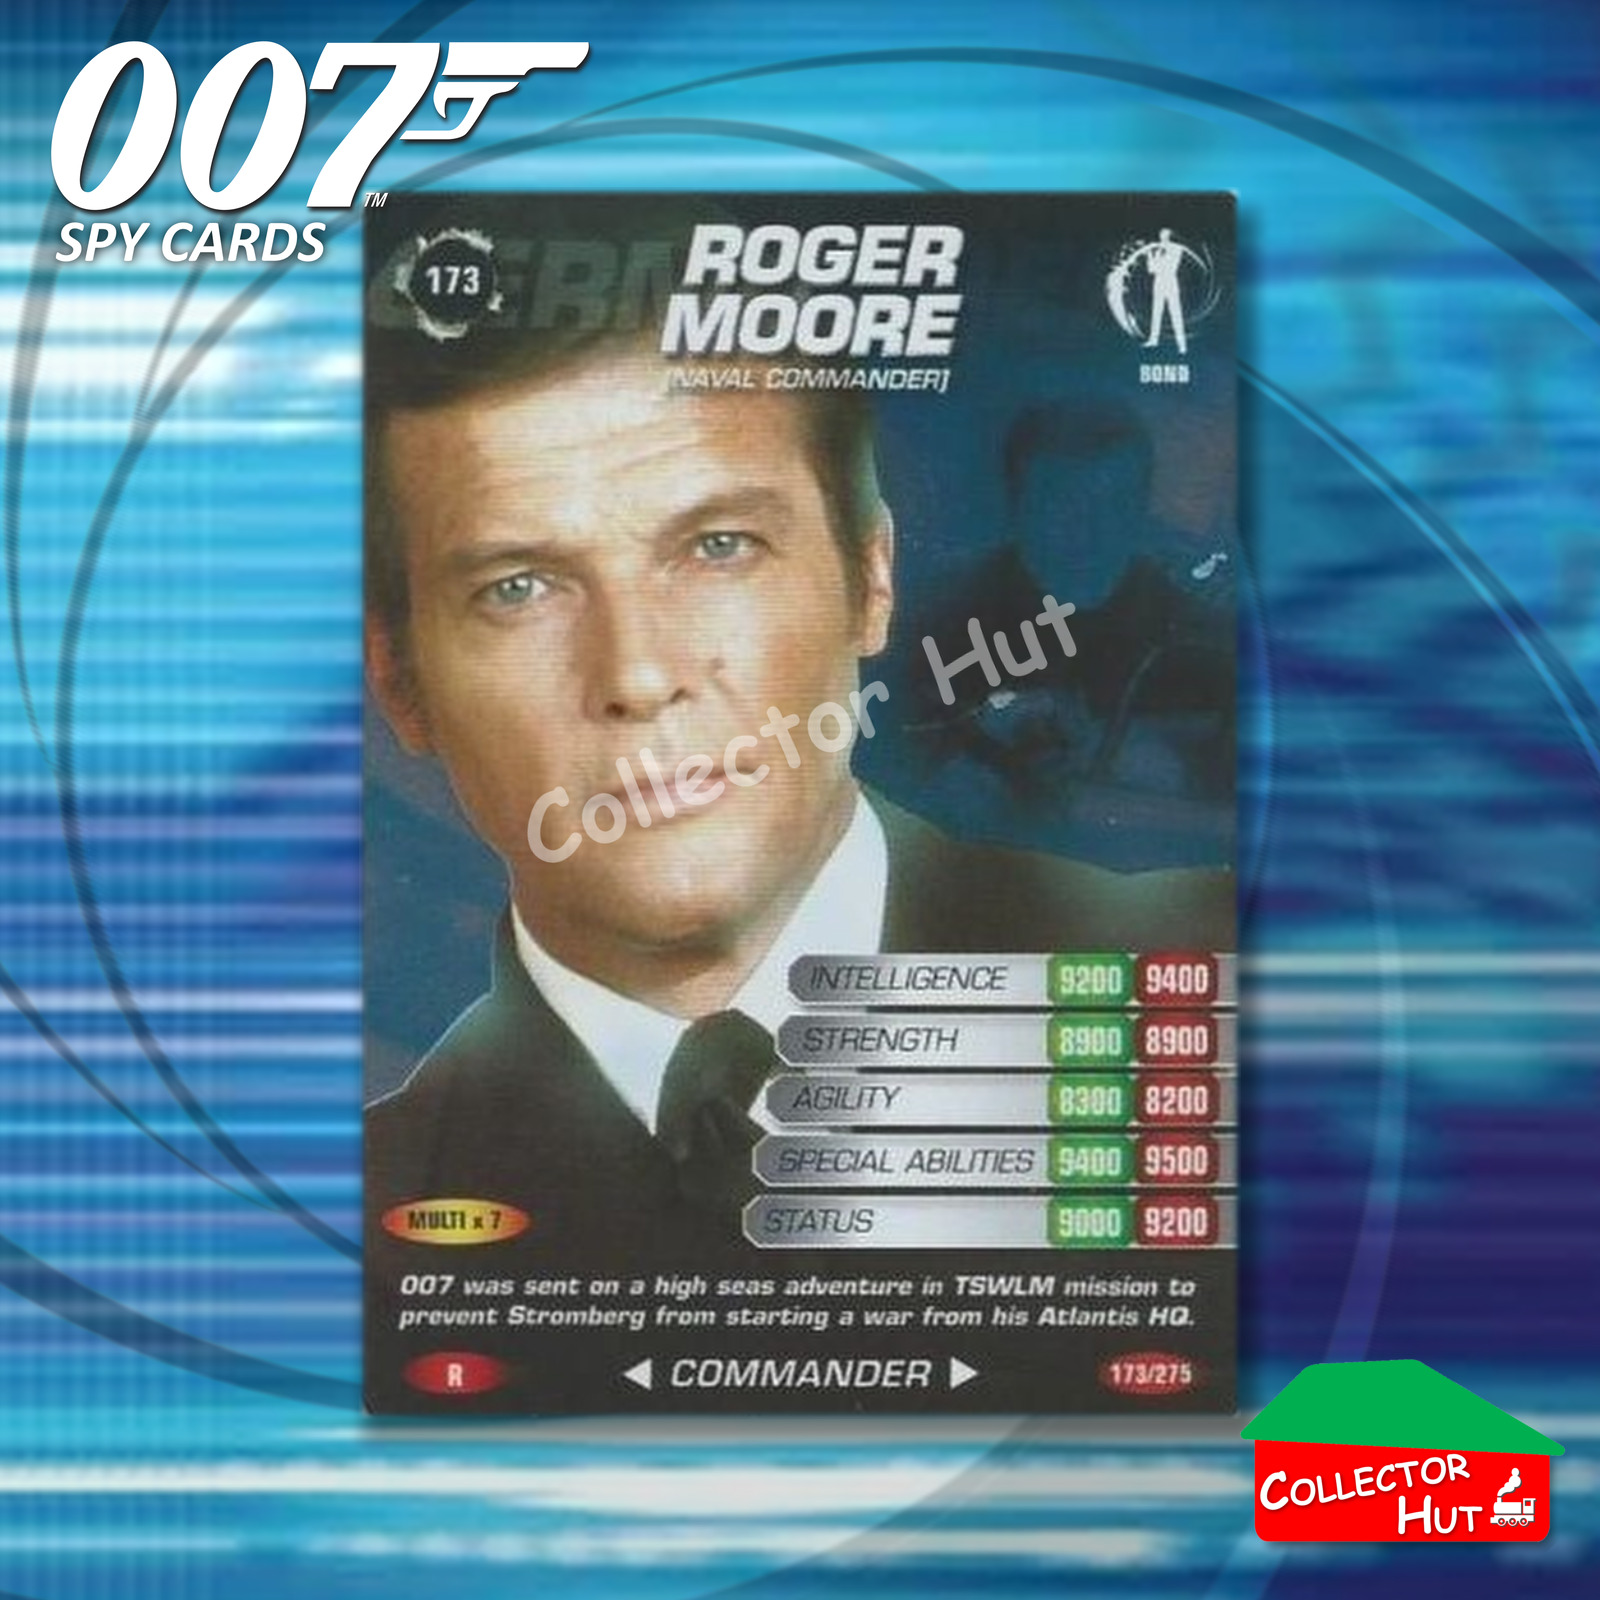 James Bond 007 Commander Spy Cards RARE, SUPER & ULTRA RARE R, SR, UR YOU CHOOSE